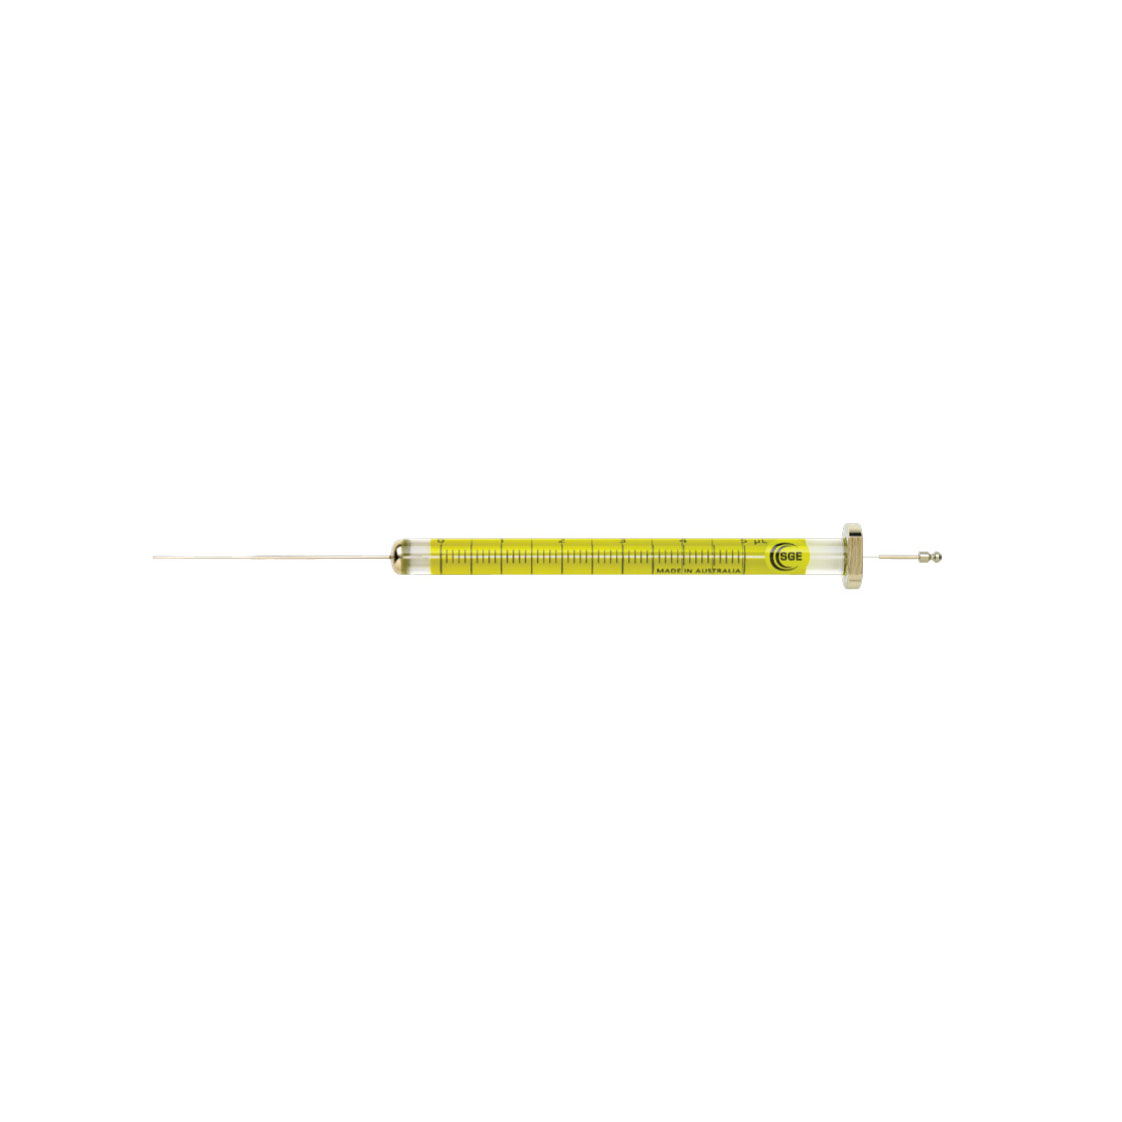 Agilent Technologies chromatography syringes